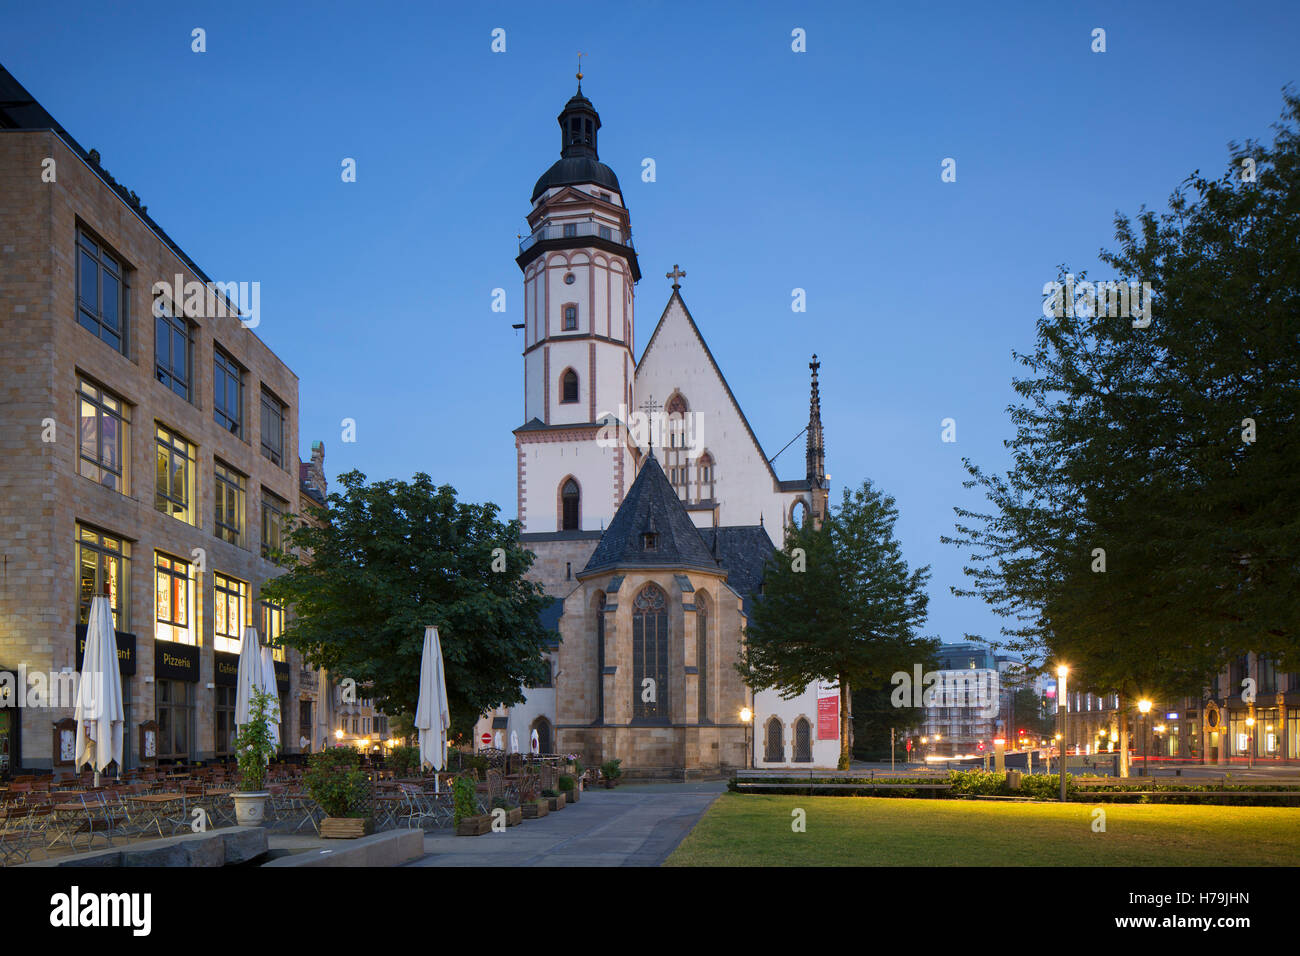 St Thomas Church (Thomaskirche), Leipzig, Saxony, Germany Stock Photo